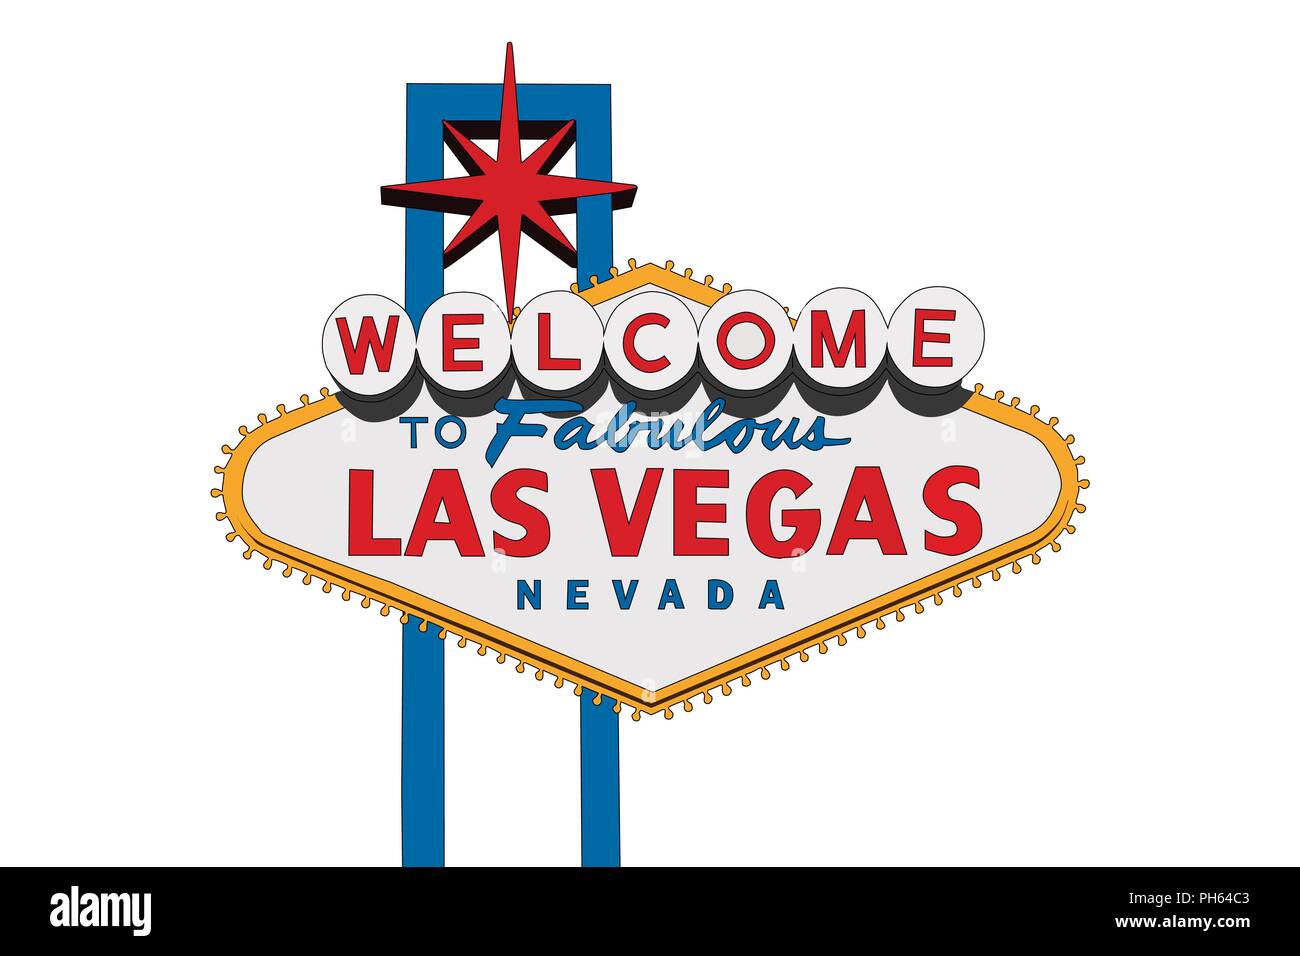 Las Vegas Nevada Willkommen Zeichen Vector Illustration auf weißen isoliert. Stock Vektor